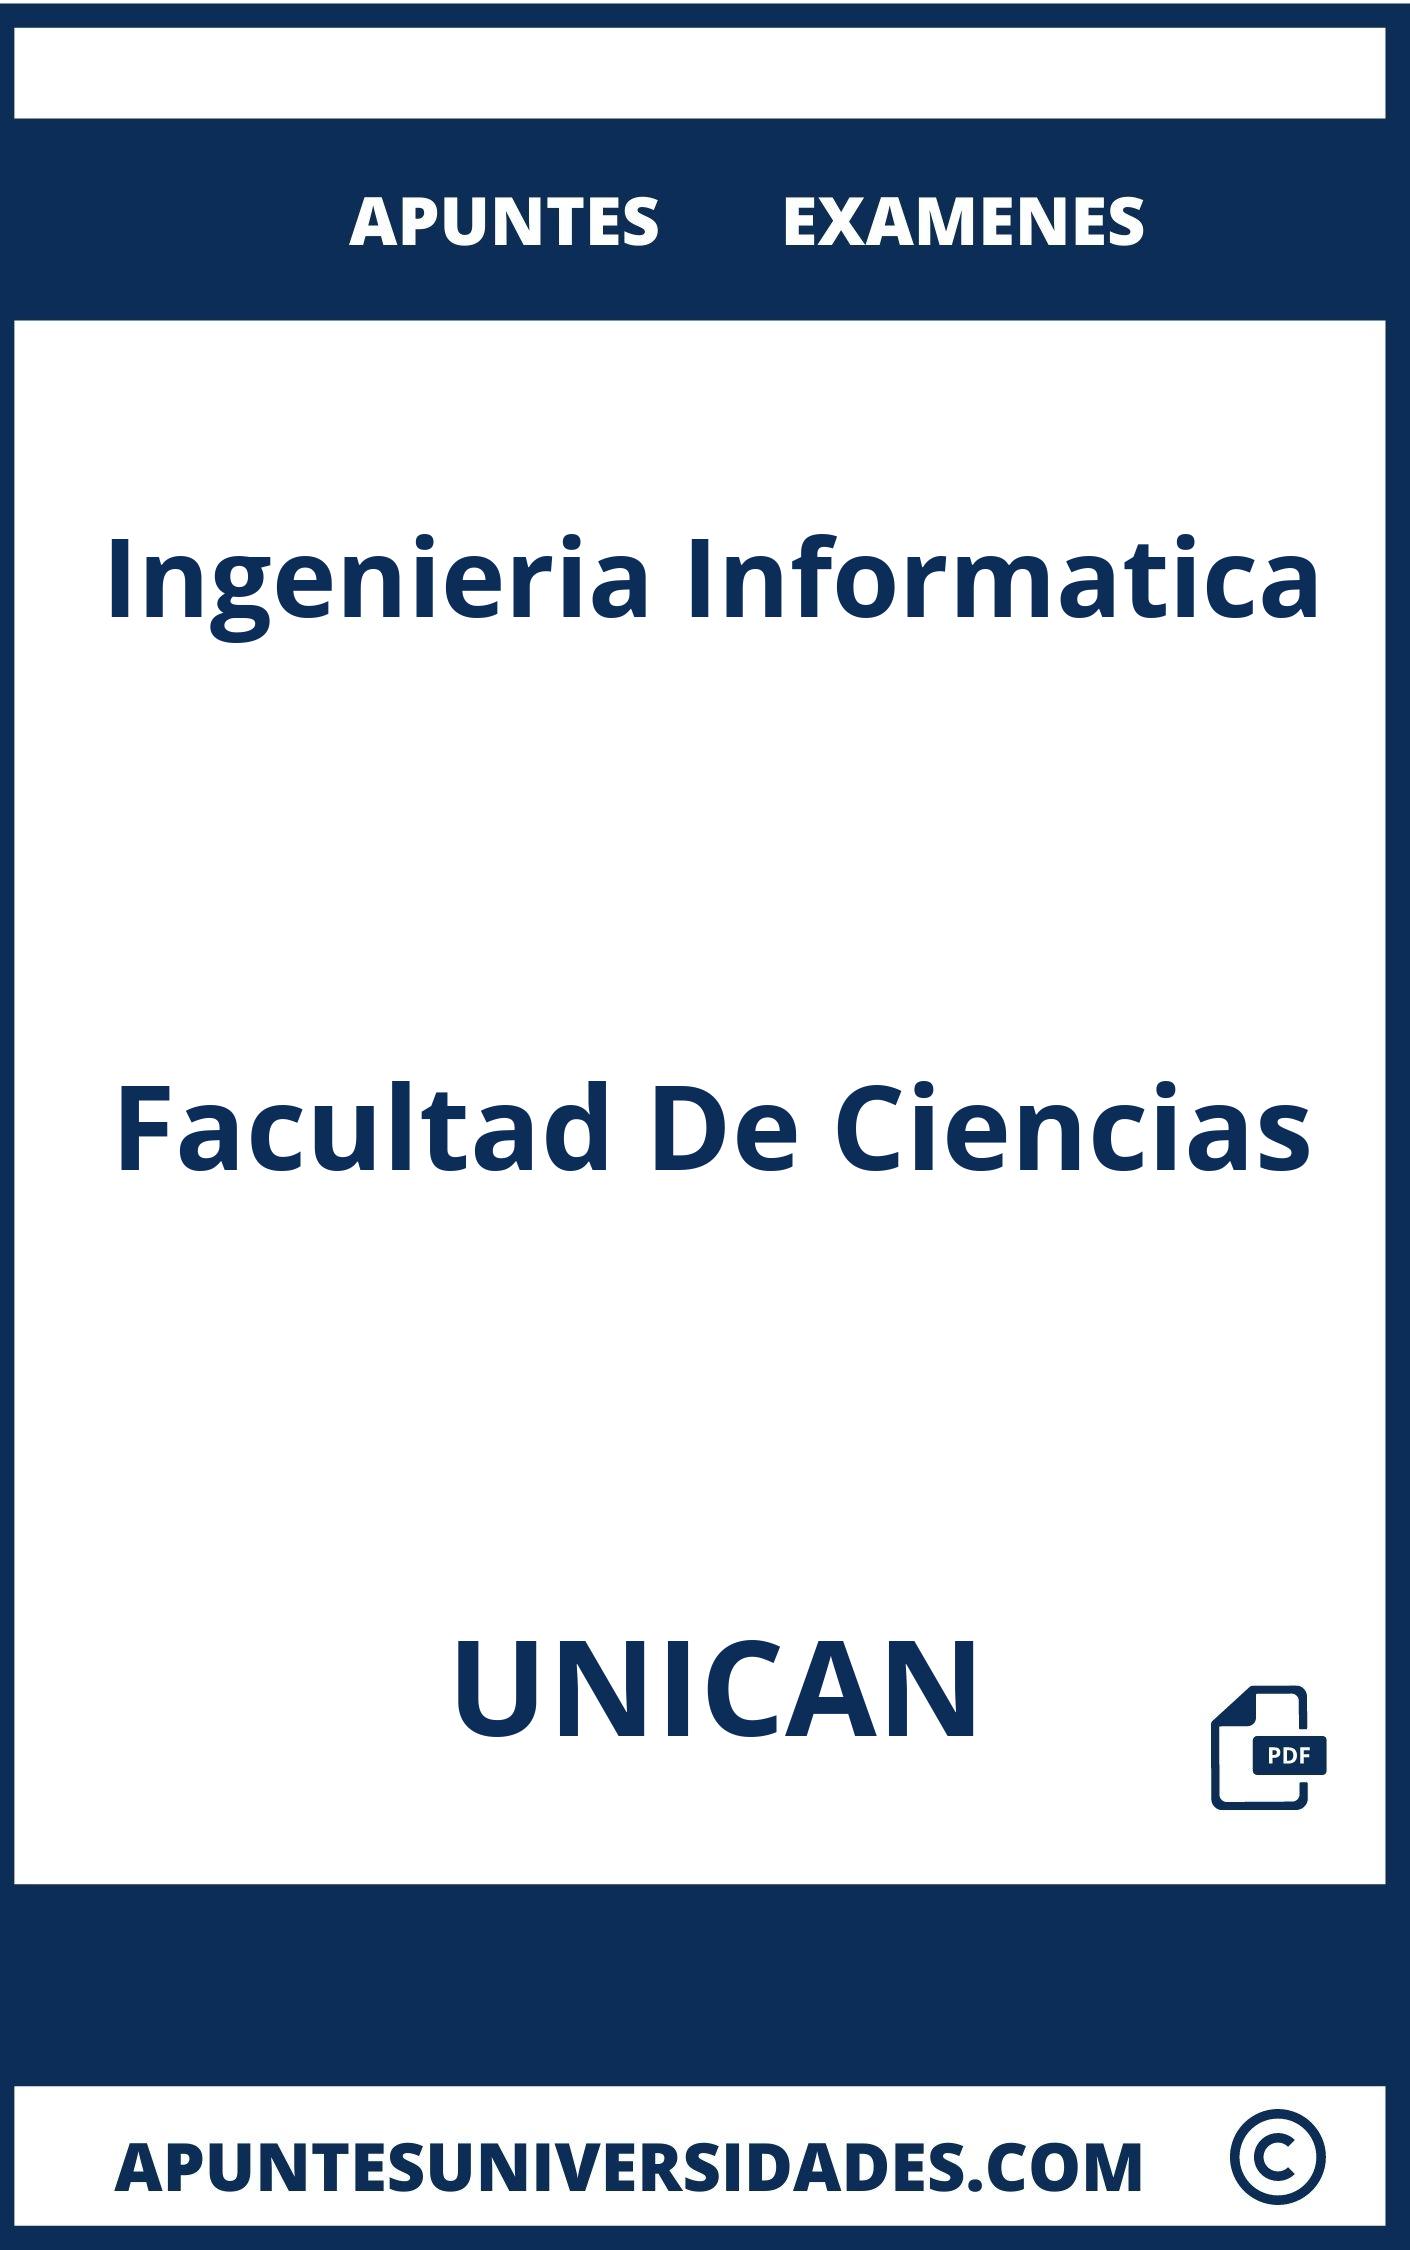 Examenes y Apuntes Ingenieria Informatica UNICAN